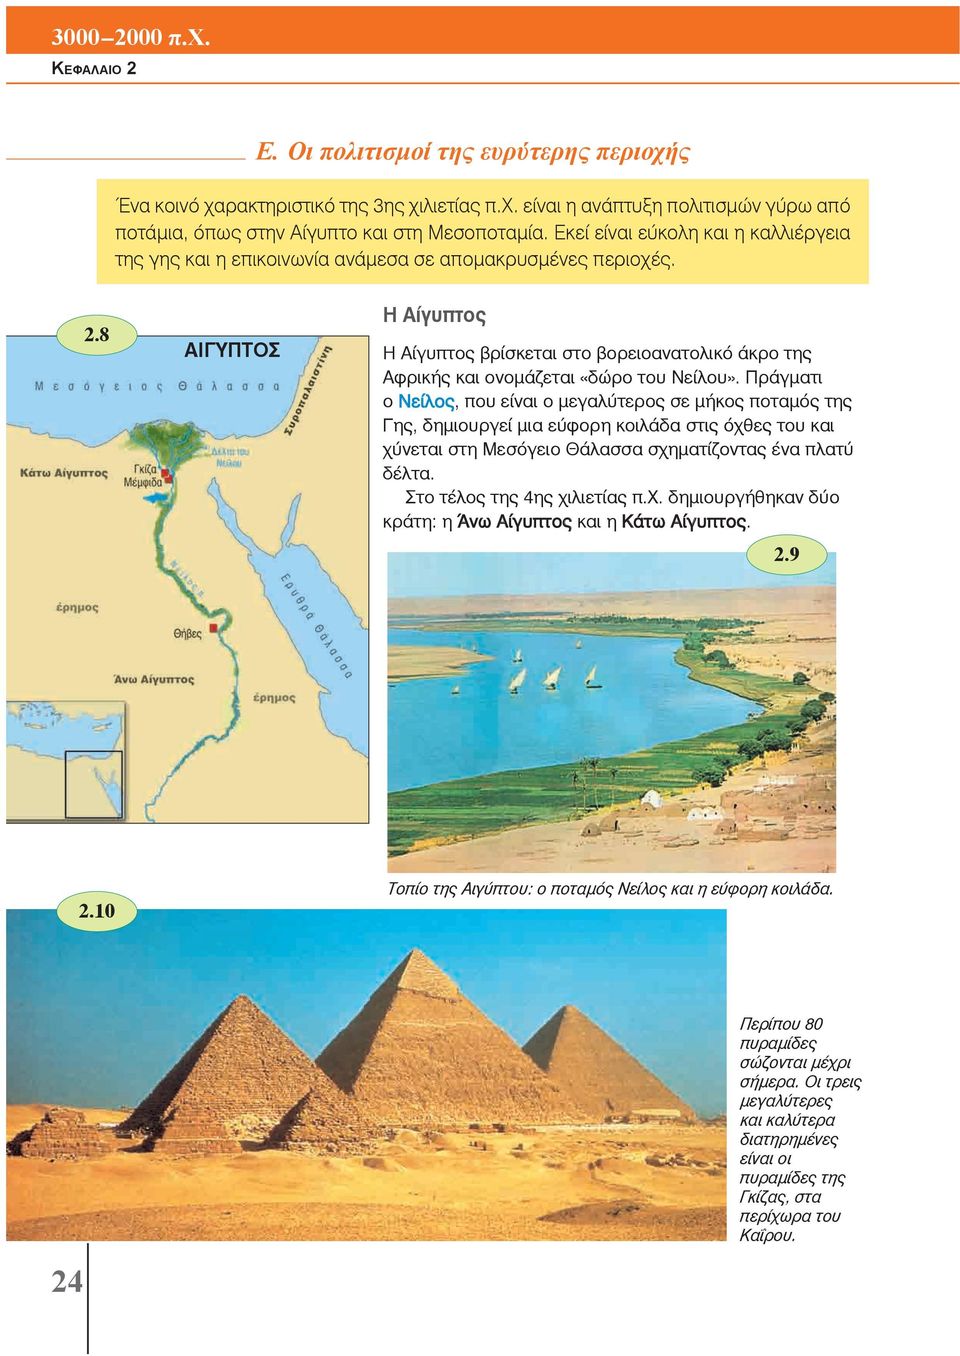 8 Η Αίγυπτος ΑΙΓΥΠΤΟΣ Η Αίγυπτος βρίσκεται στο βορειοανατολικό άκρο της Αφρικής και ονομάζεται «δώρο του Νείλου».